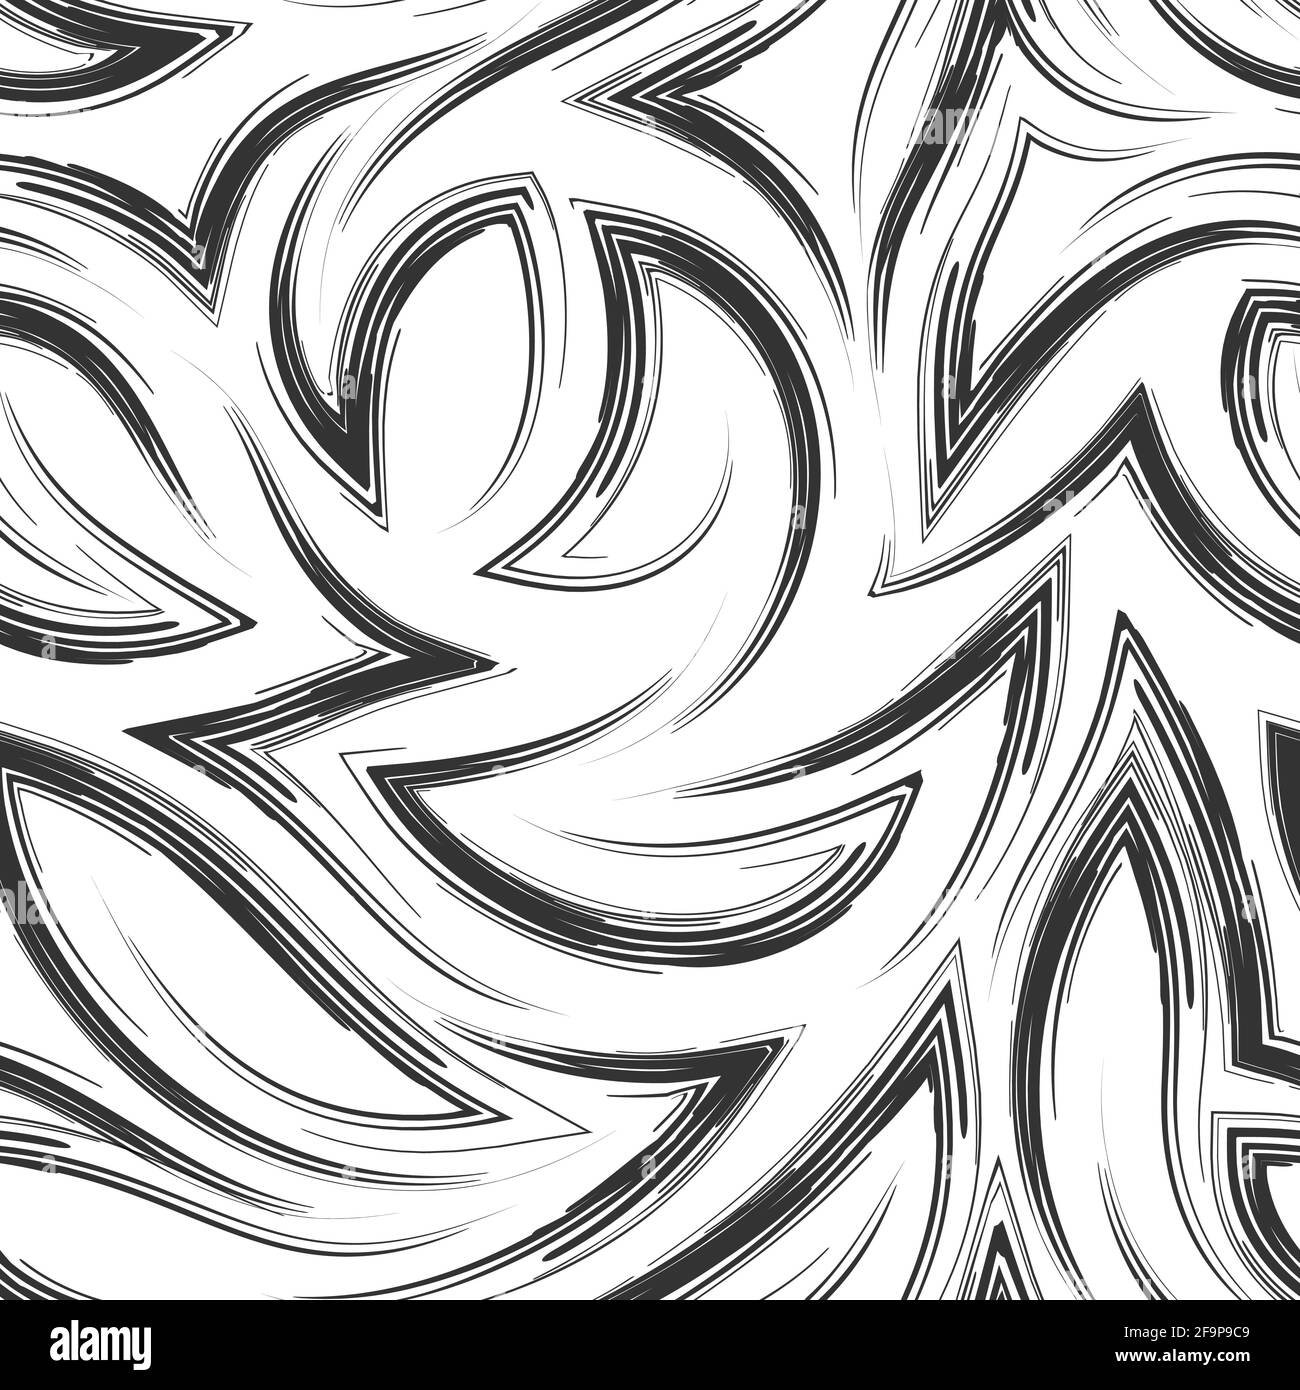 Schwarzes Vektor-Nahtloses Muster aus glatten Pinselstrichen oder Aquarellen in Form von Ecken und Locken. Monochrome Textur. Stock Vektor